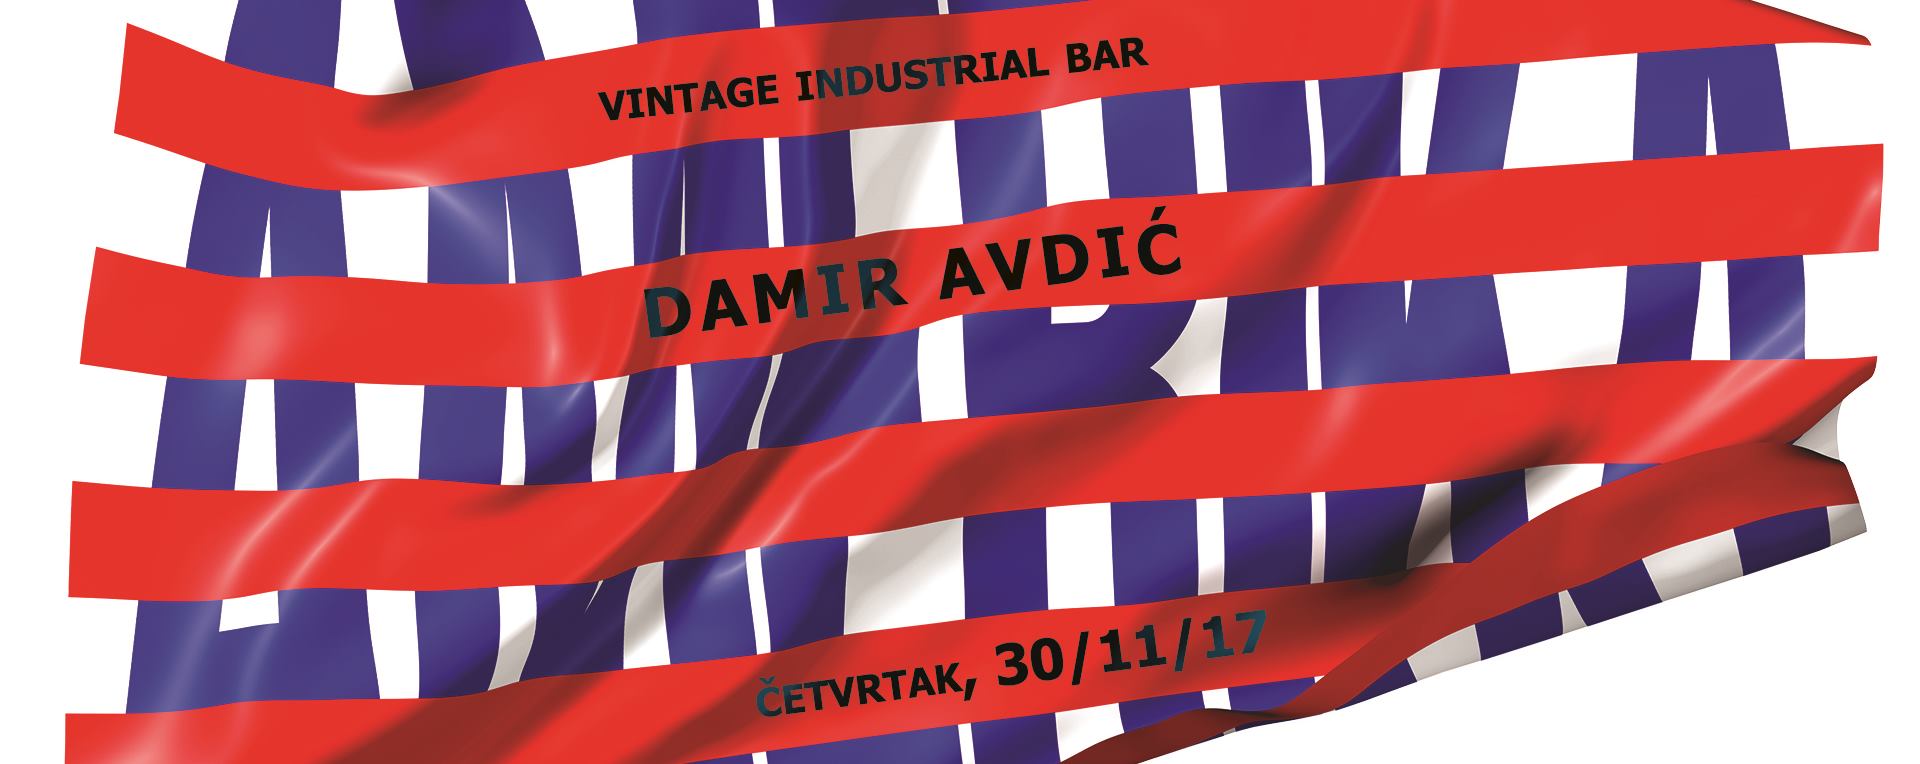 Najnoviji album Damira Avdića nailazi na oduševljenje publike i kritike